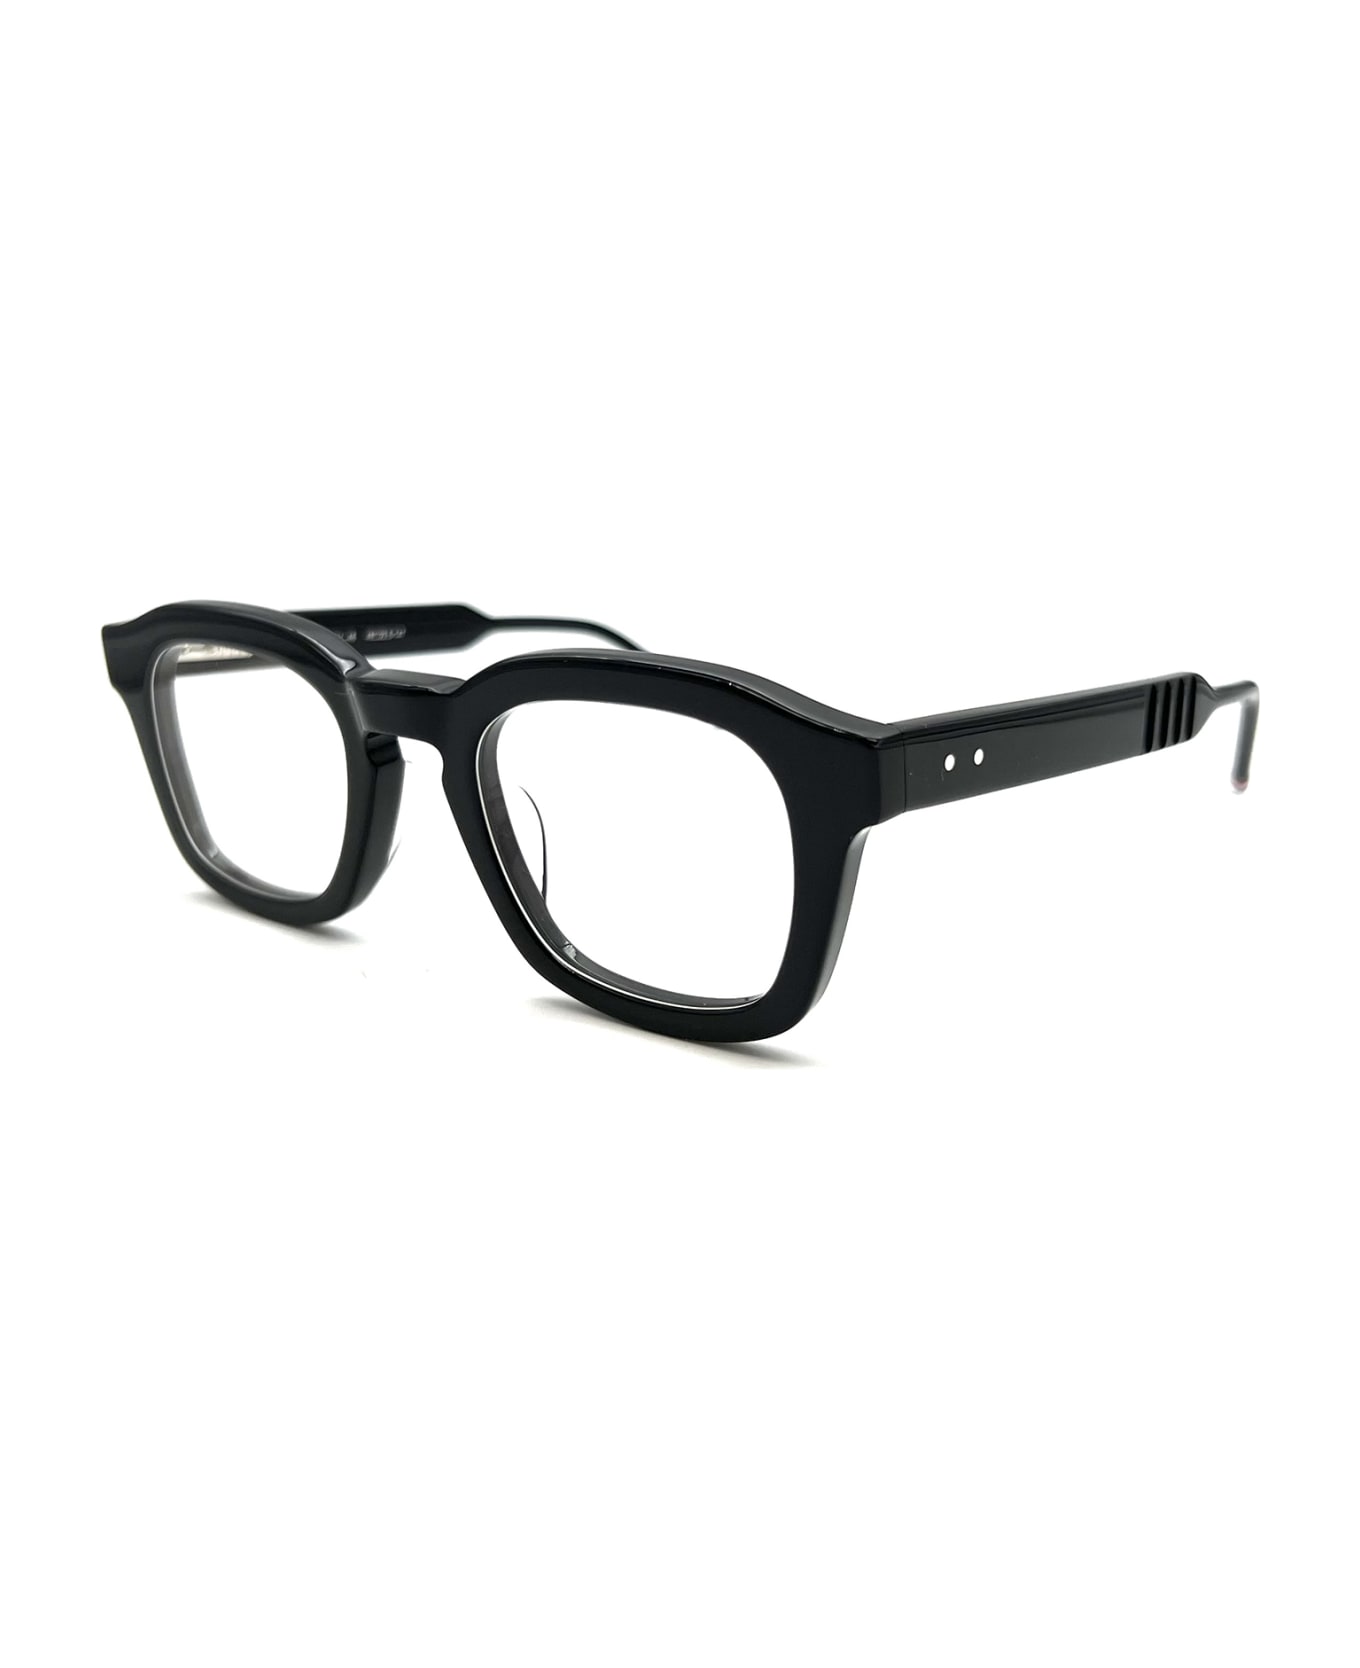 Thom Browne UEO412A/G0002 Eyewear - Black